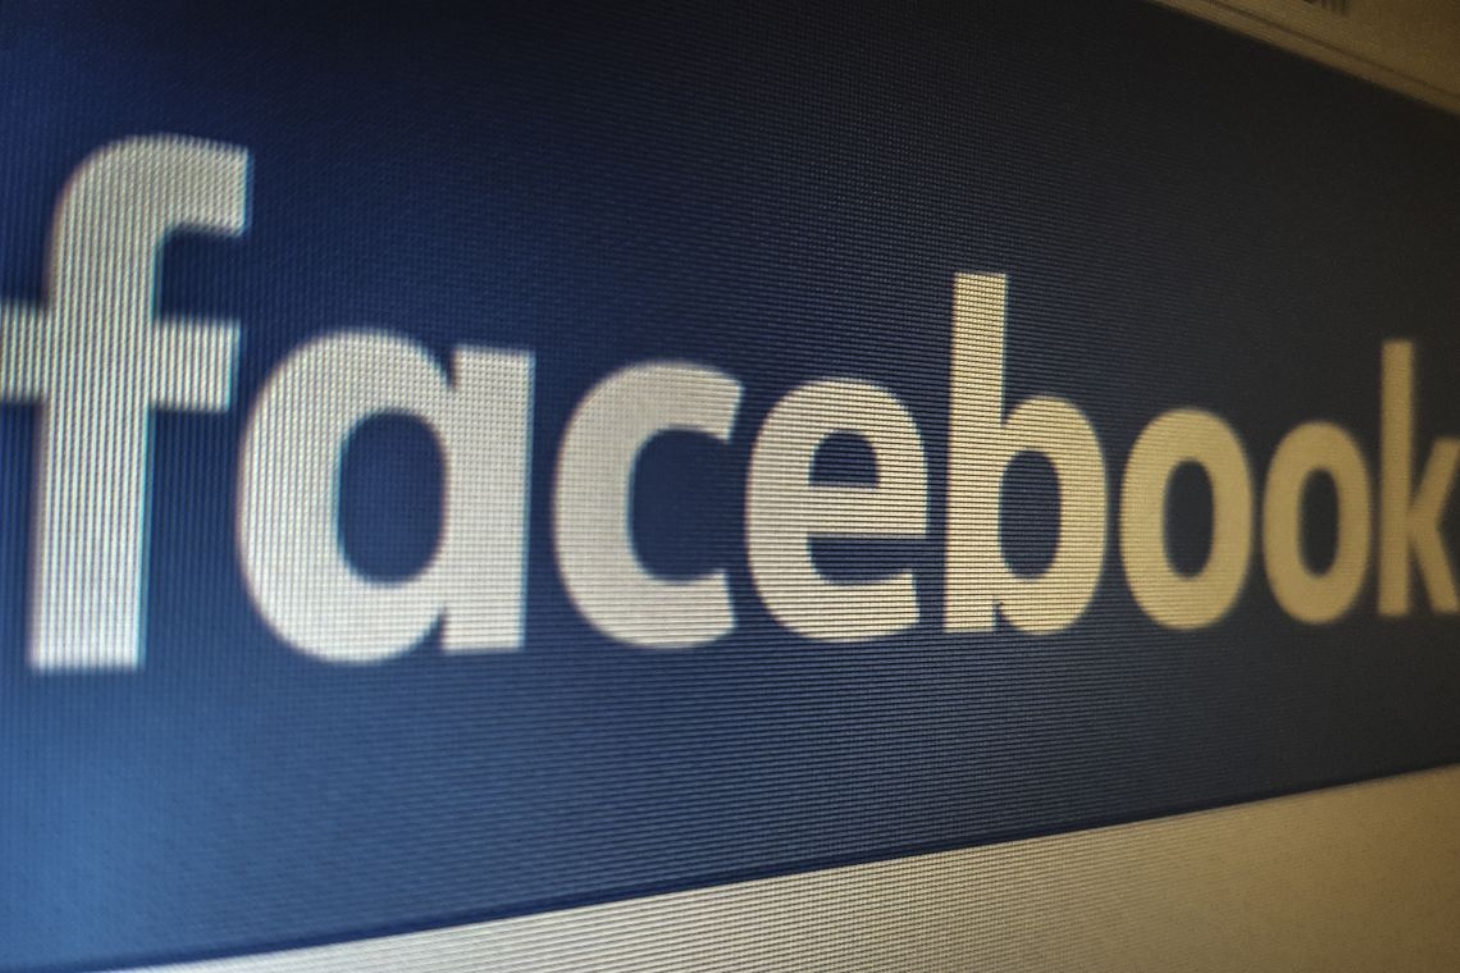 Contatos de mais de 400 milhões de contas do Facebook são expostos | Jornal da Orla